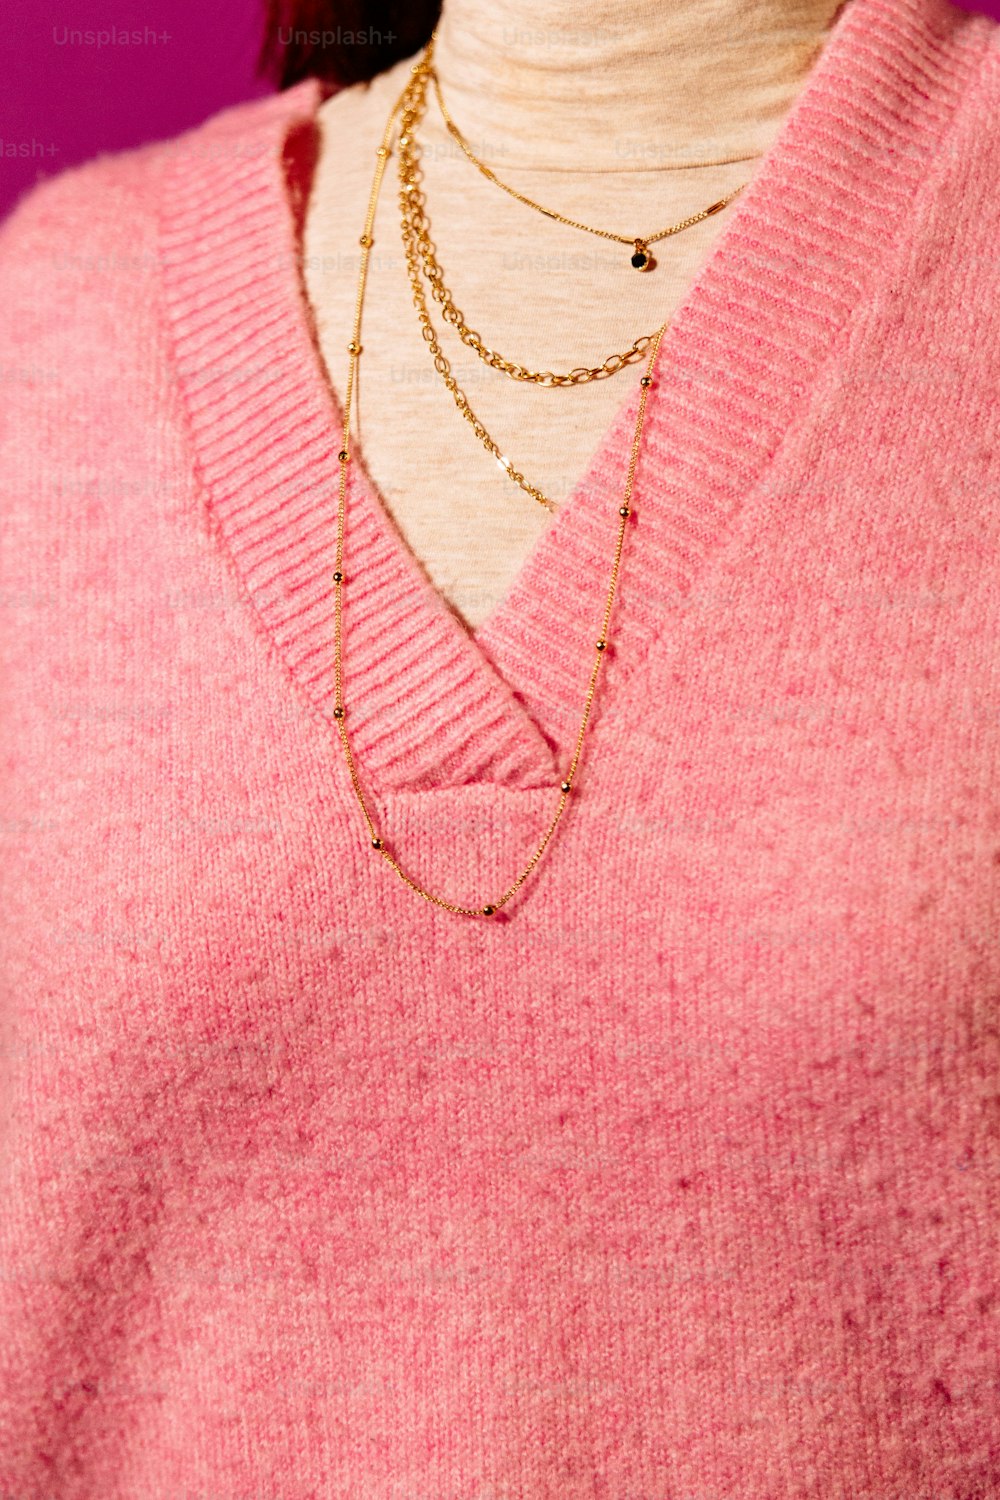 Un primer plano de una persona con un suéter rosa